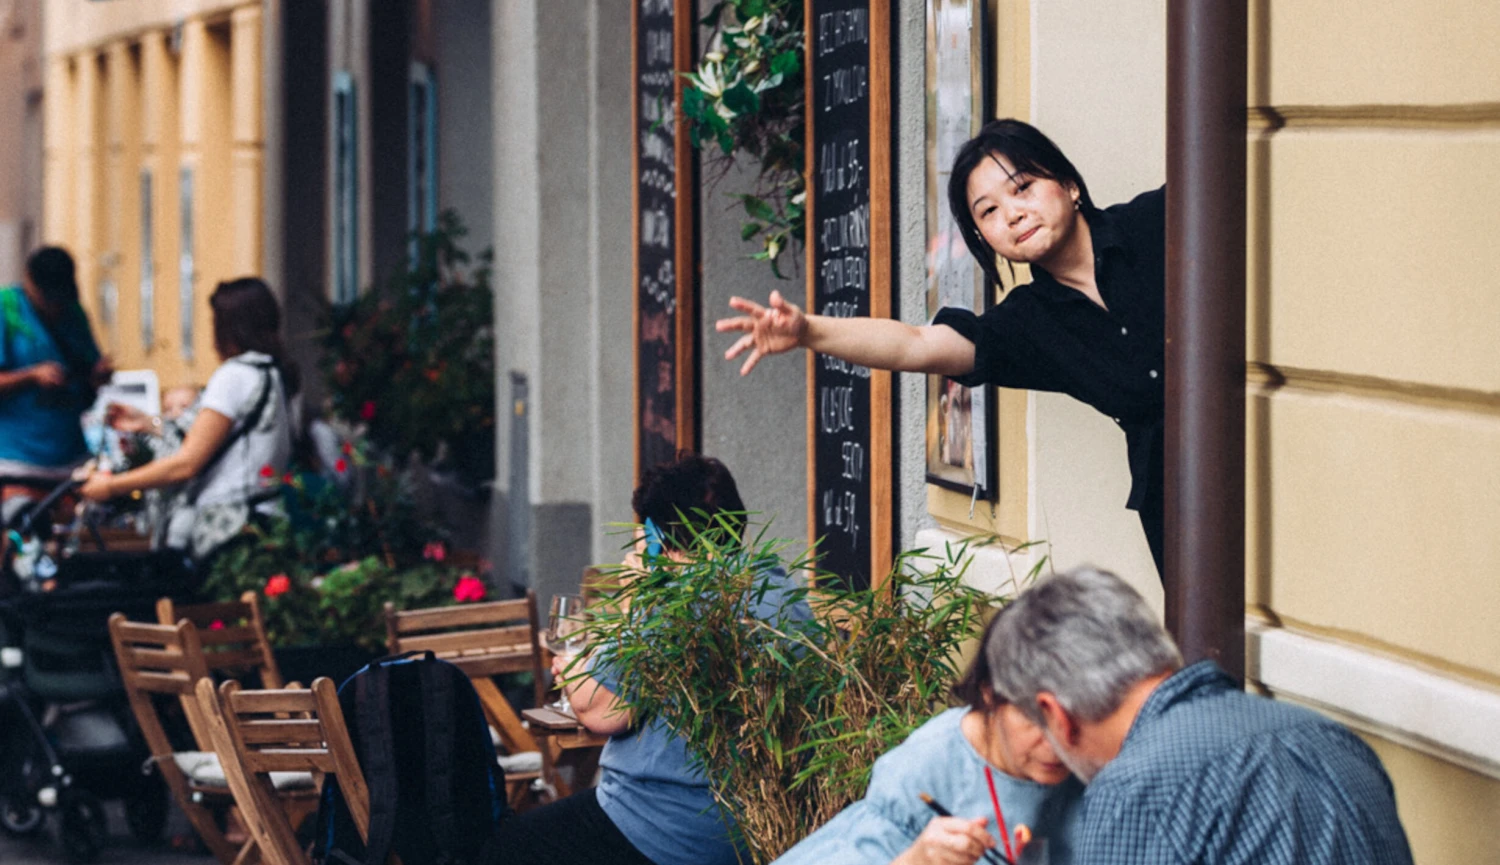 Nudle jako závislost. Číňanka si otevřela v Praze autentickou restauraci